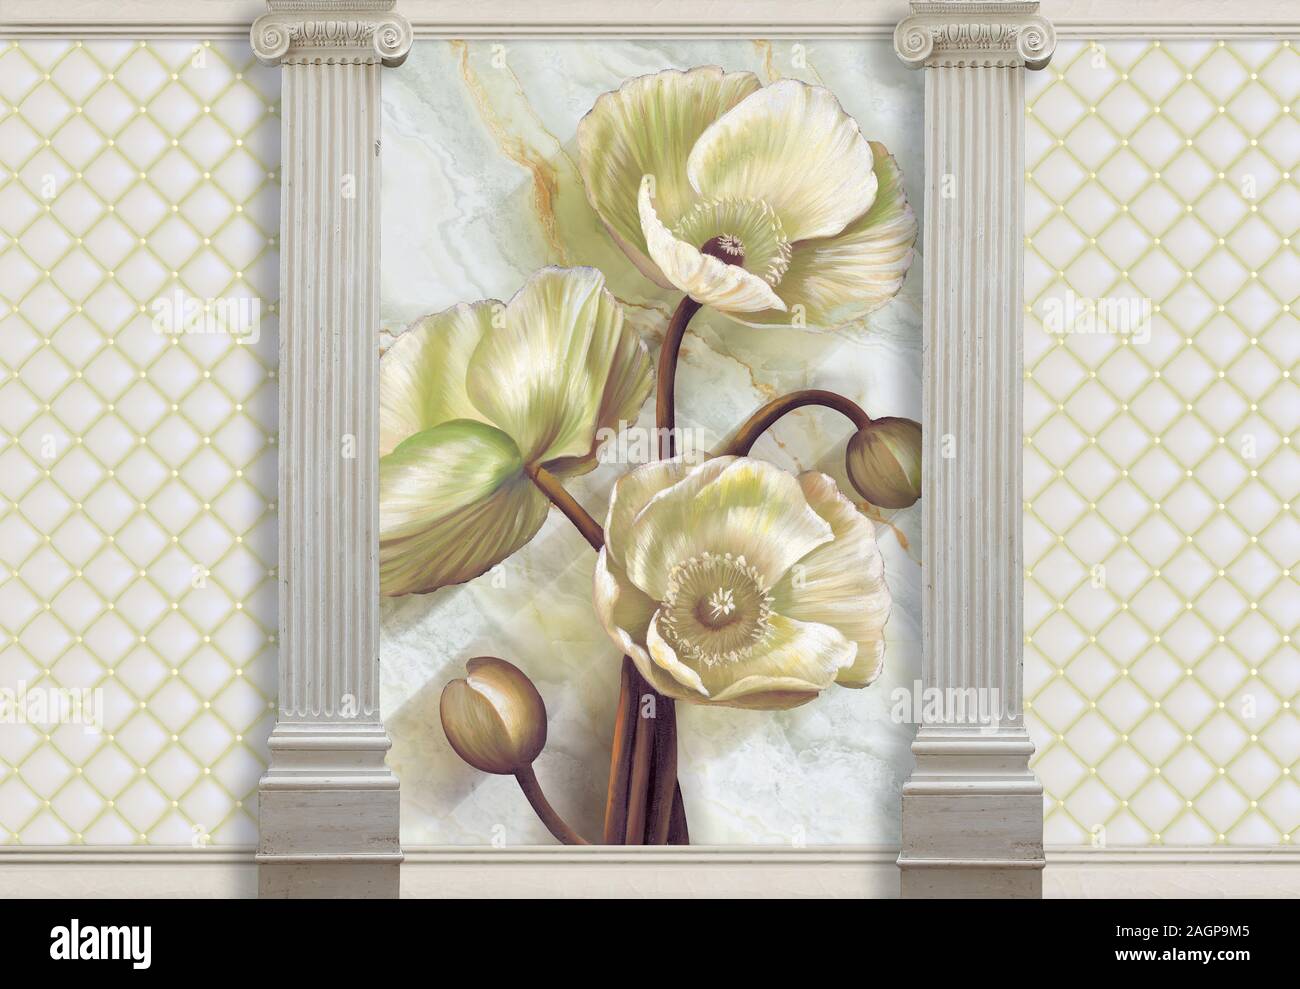 Fond d'écran 3d avec la peinture des fleurs sur fond de marbre, colonnes et effet cuir matelassé devenu un accent dans le design intérieur. Banque D'Images